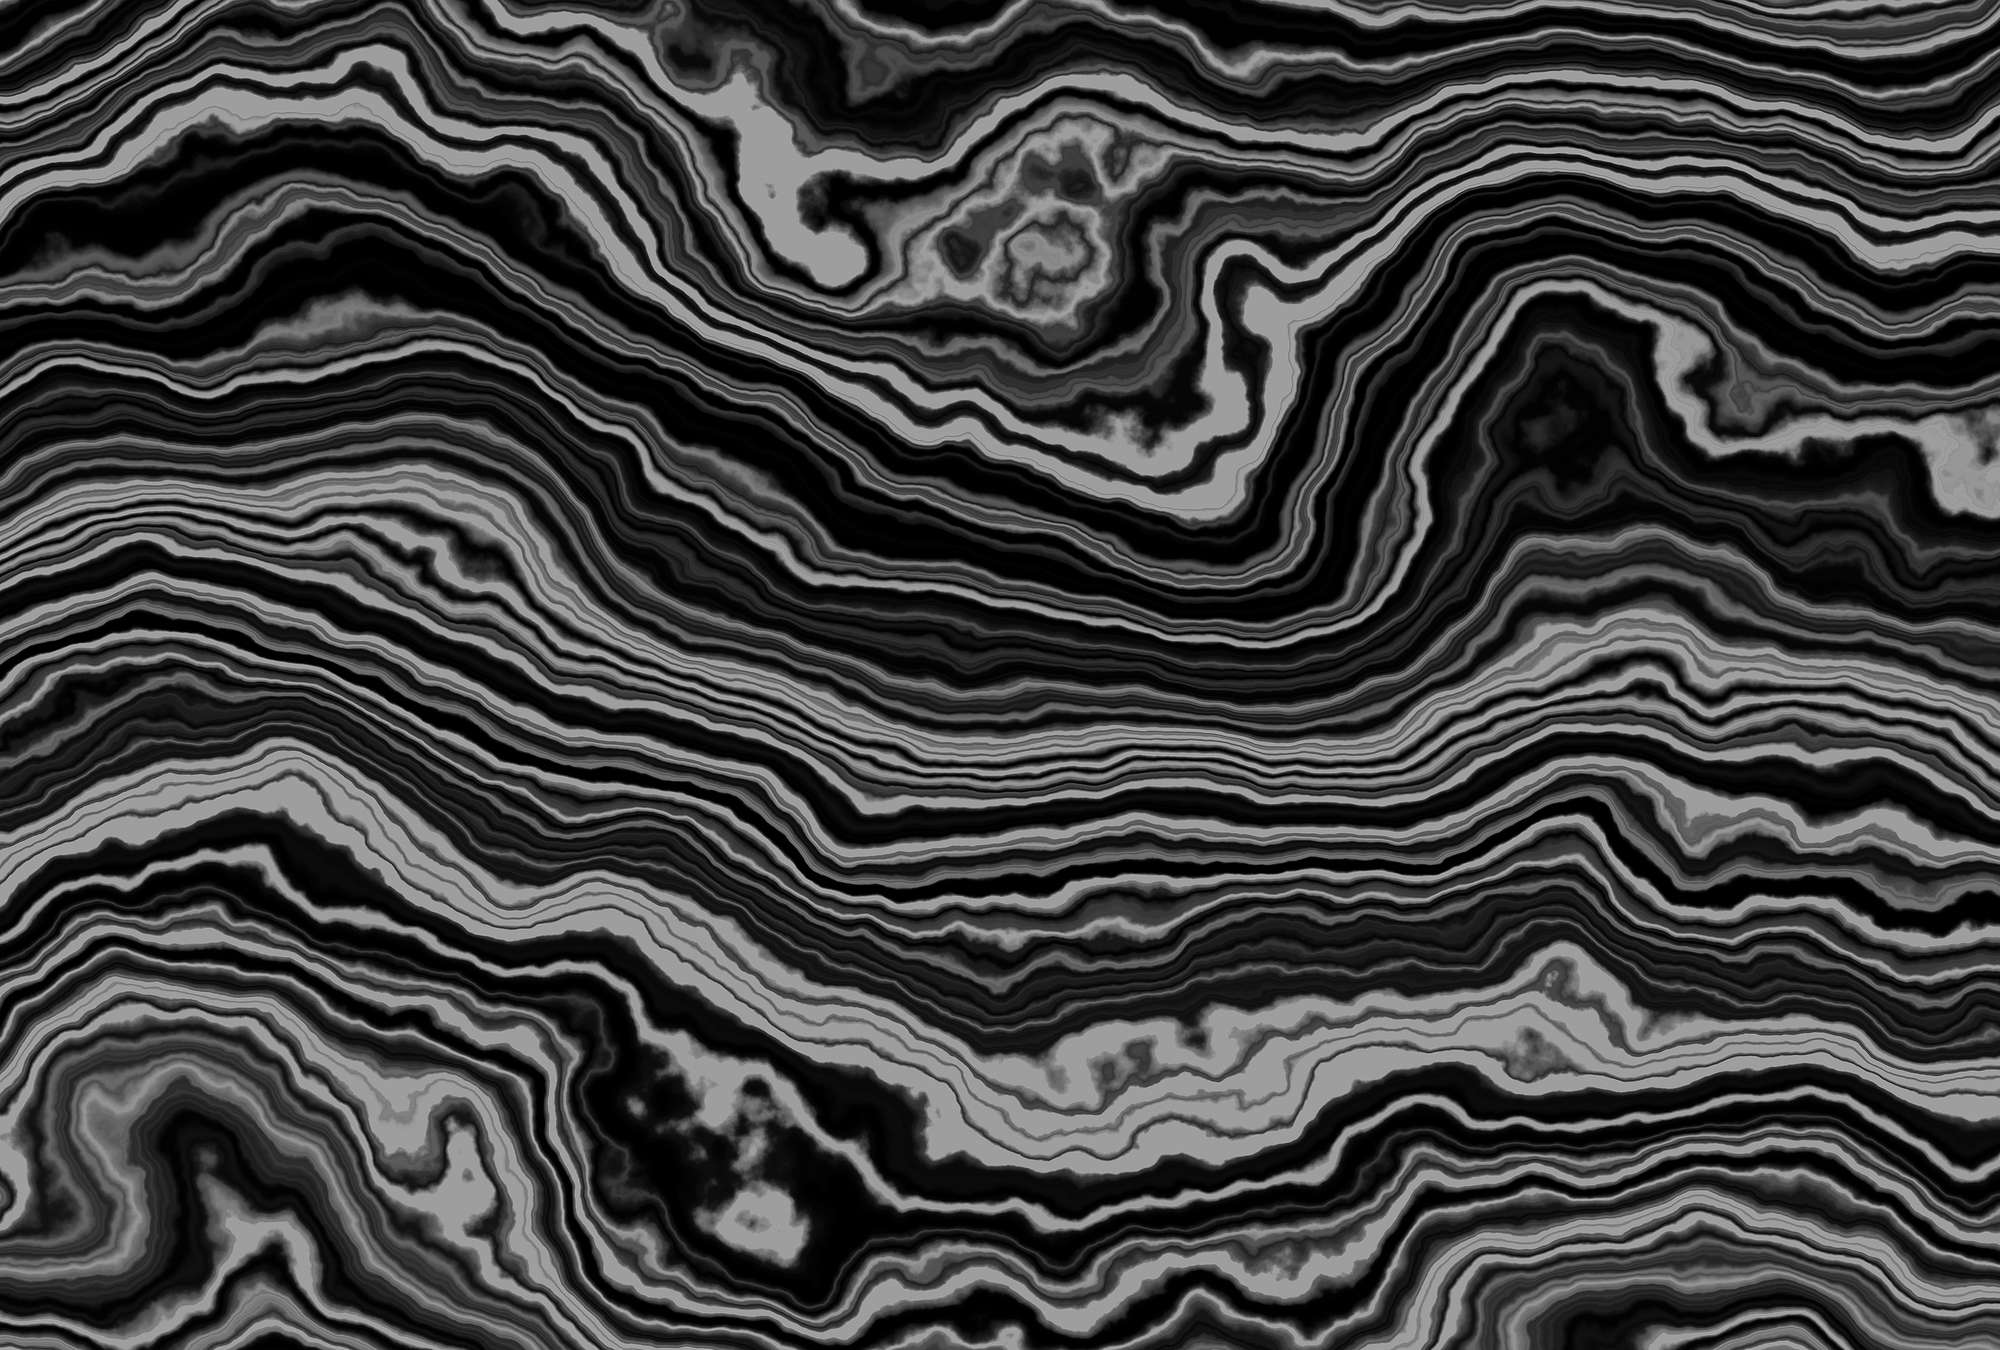             Onyx 1 - Querschnitt eines Onyx Marmor als Fototapete – Schwarz, Weiss | Mattes Glattvlies
        